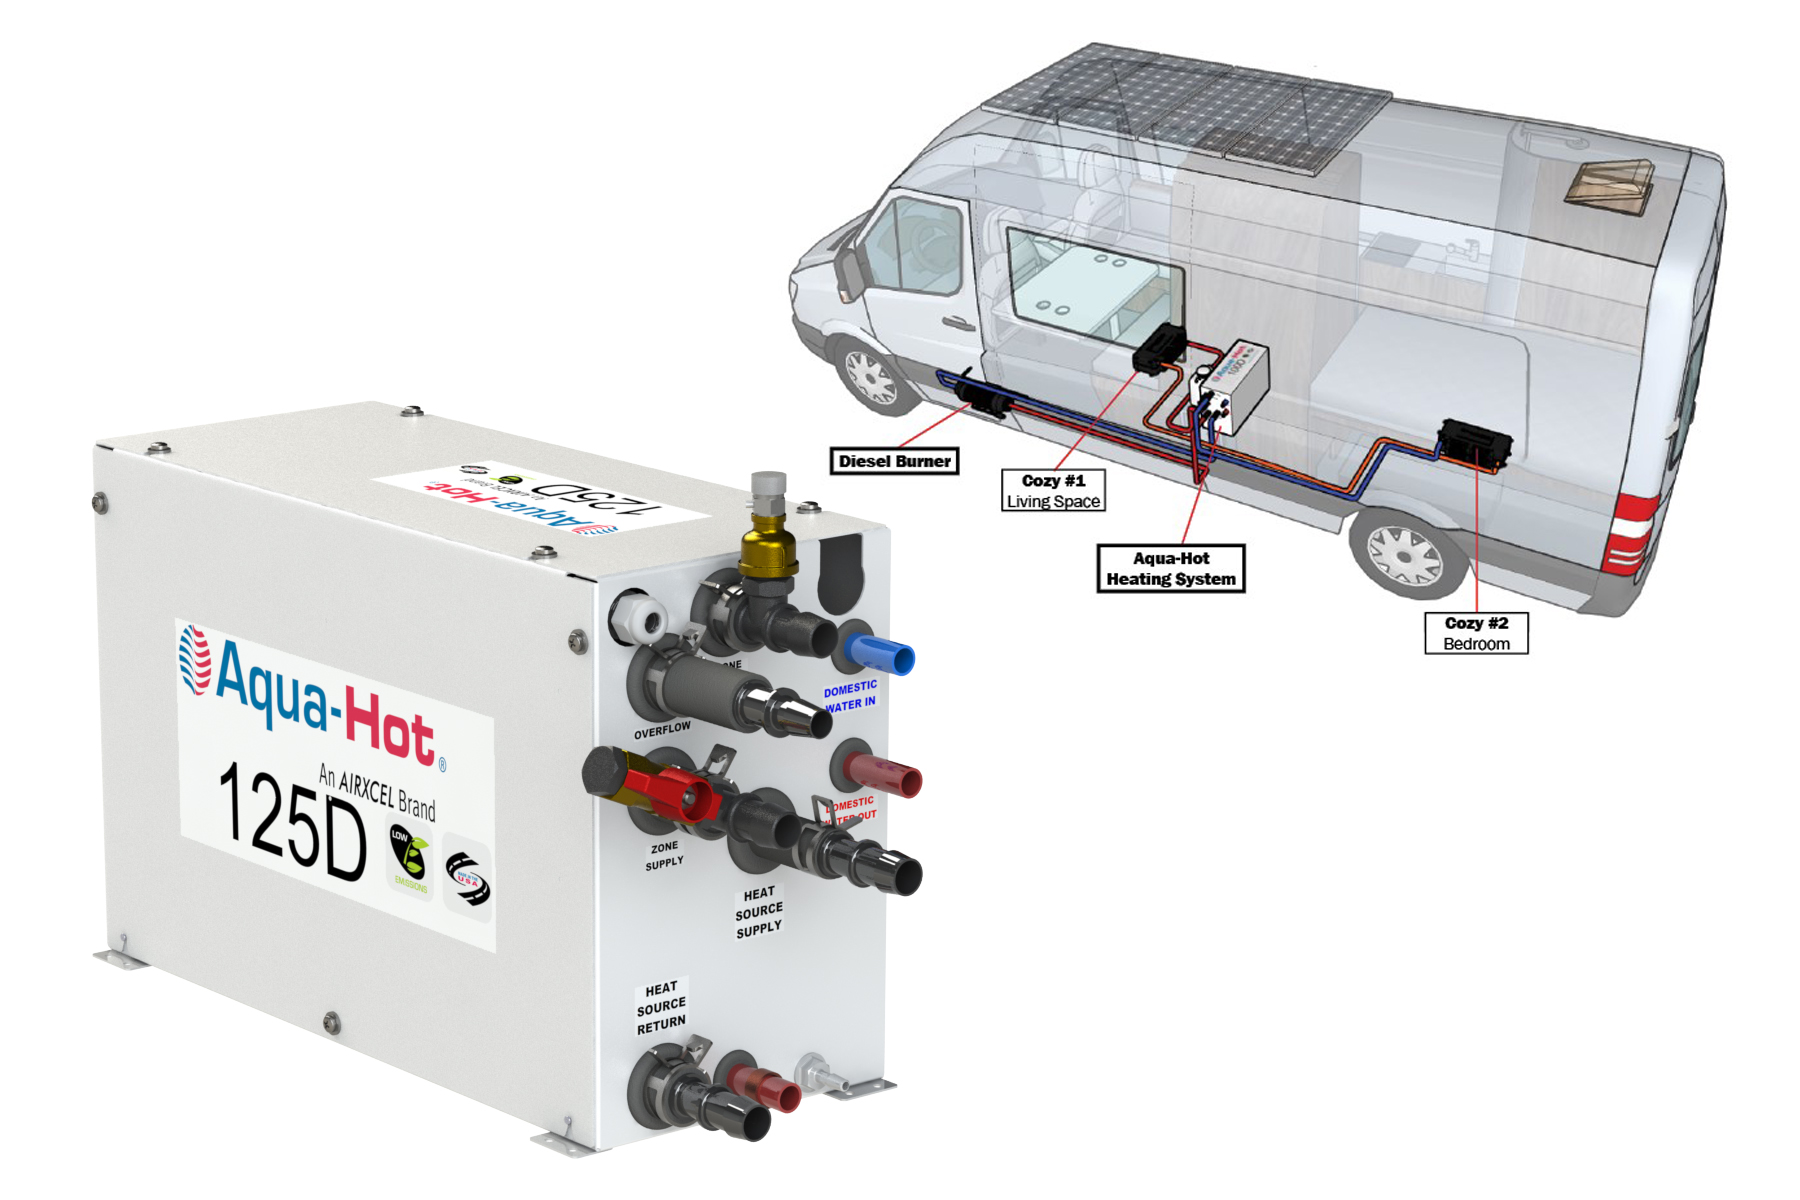 Aqua-Hot 250D compact diesel RV heating EMZ Aqua-Hot | Factory Authorized.....